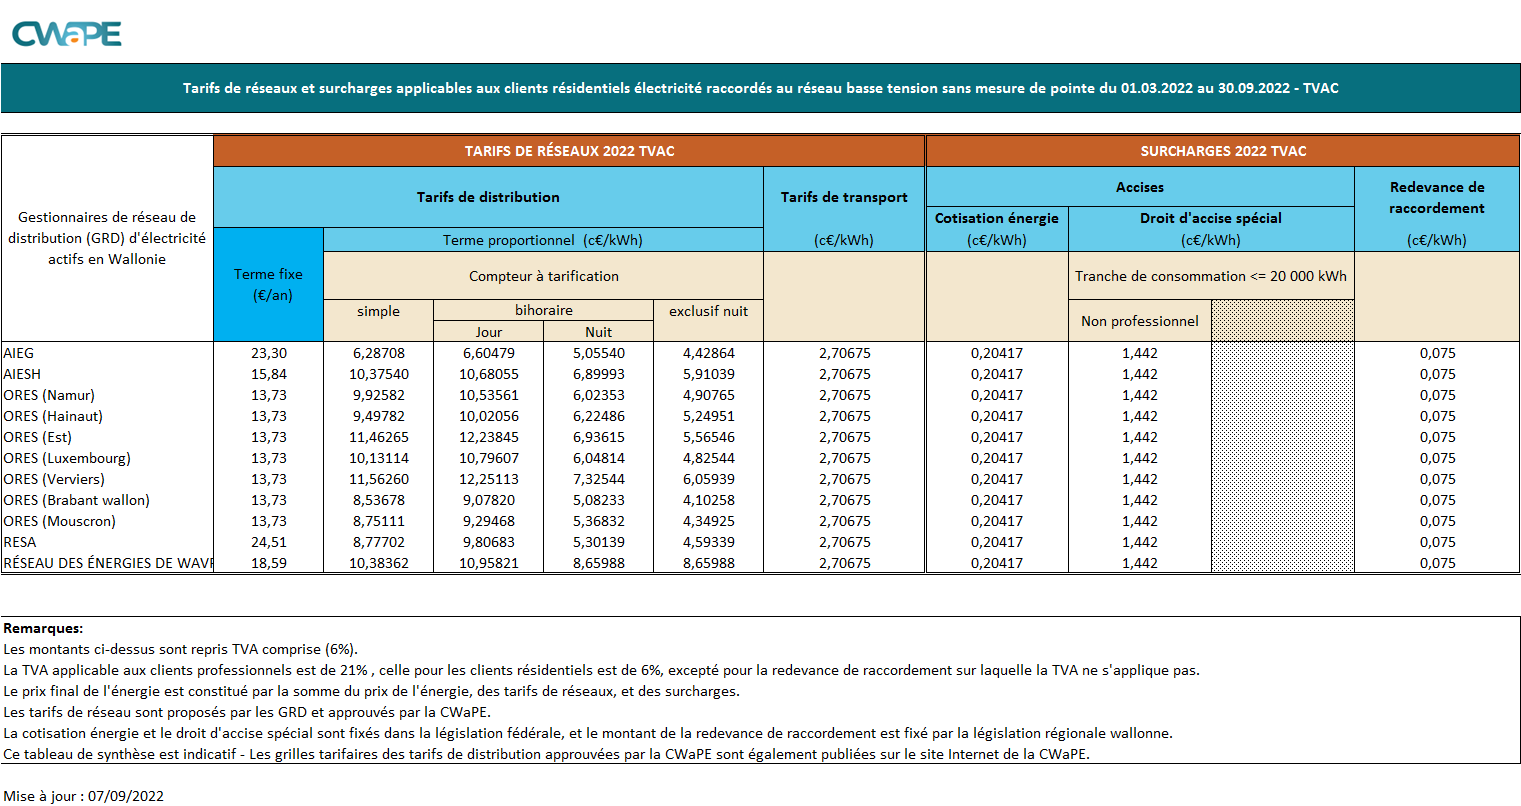 SYNTHESE DES TARIFS DE DISTRIBUTION ELEC 2022 - 1.03.2022 - 30.09.2022 TVAC